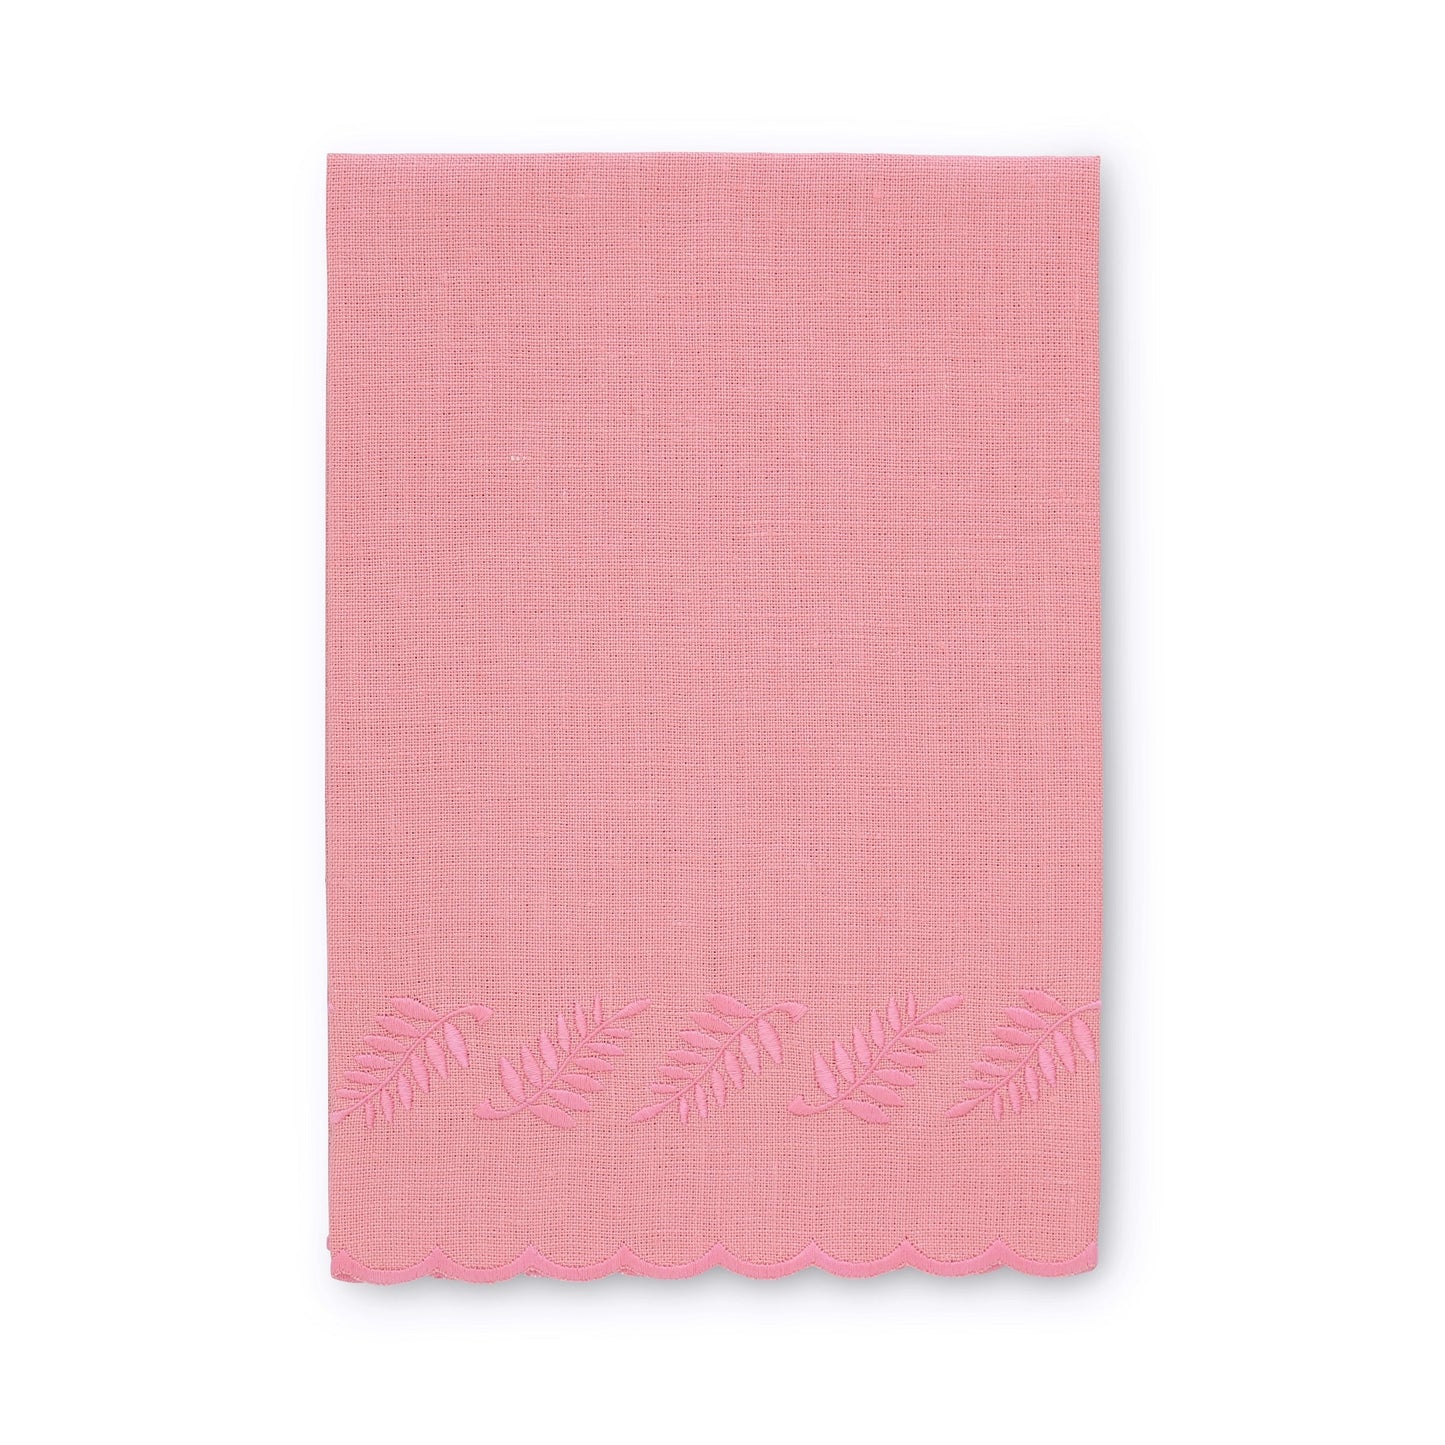 Asciugamano per ospiti in lino smerlato salmone / felce rosa (ciascuno)